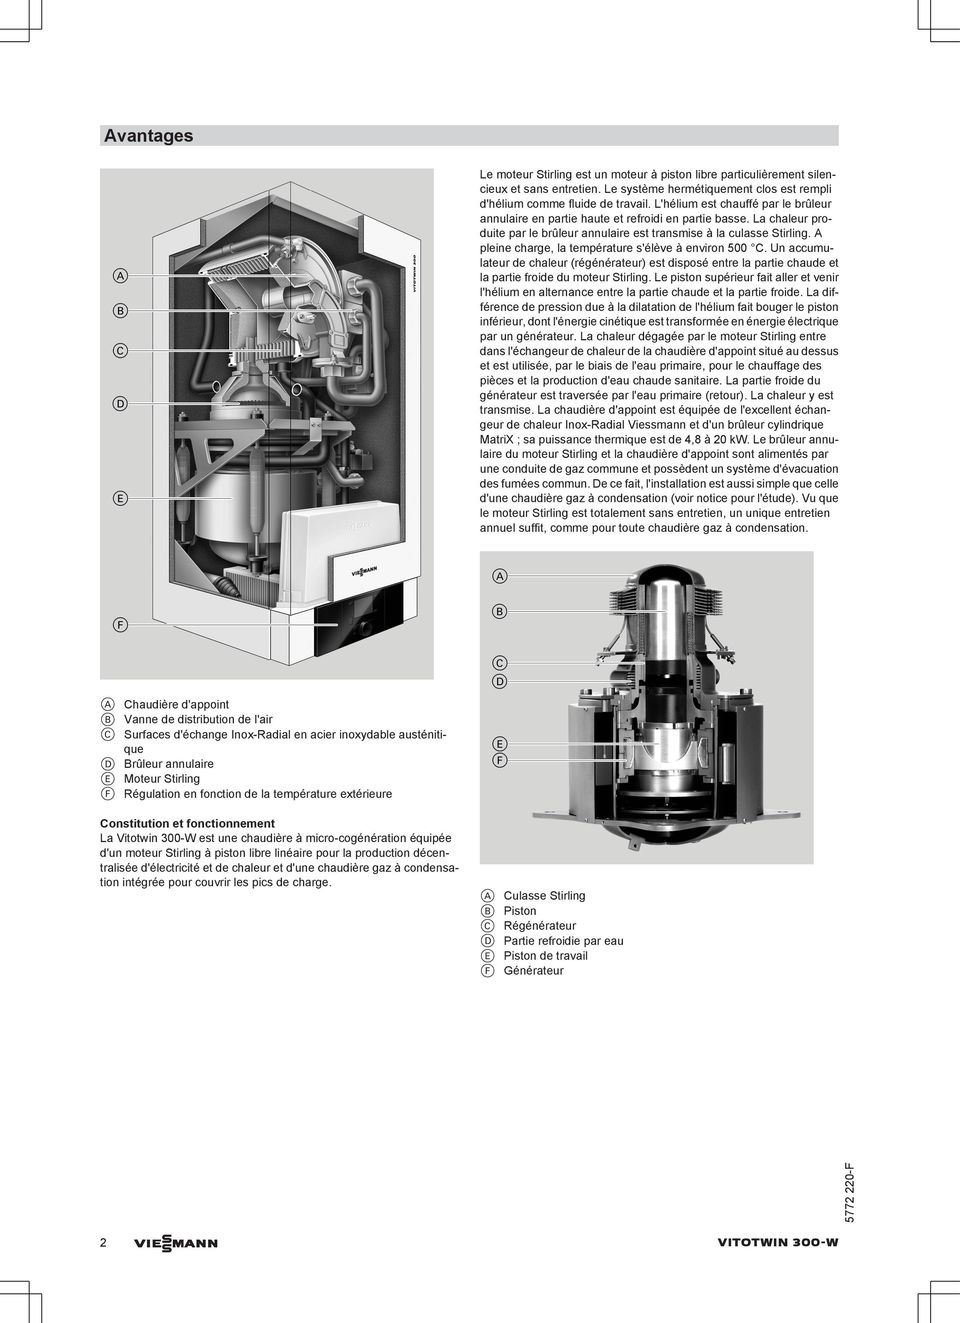 A pleine charge, la température s'élève à environ 500 C. Un accumulateur de chaleur (régénérateur) est disposé entre la partie chaude et la partie froide du moteur Stirling.